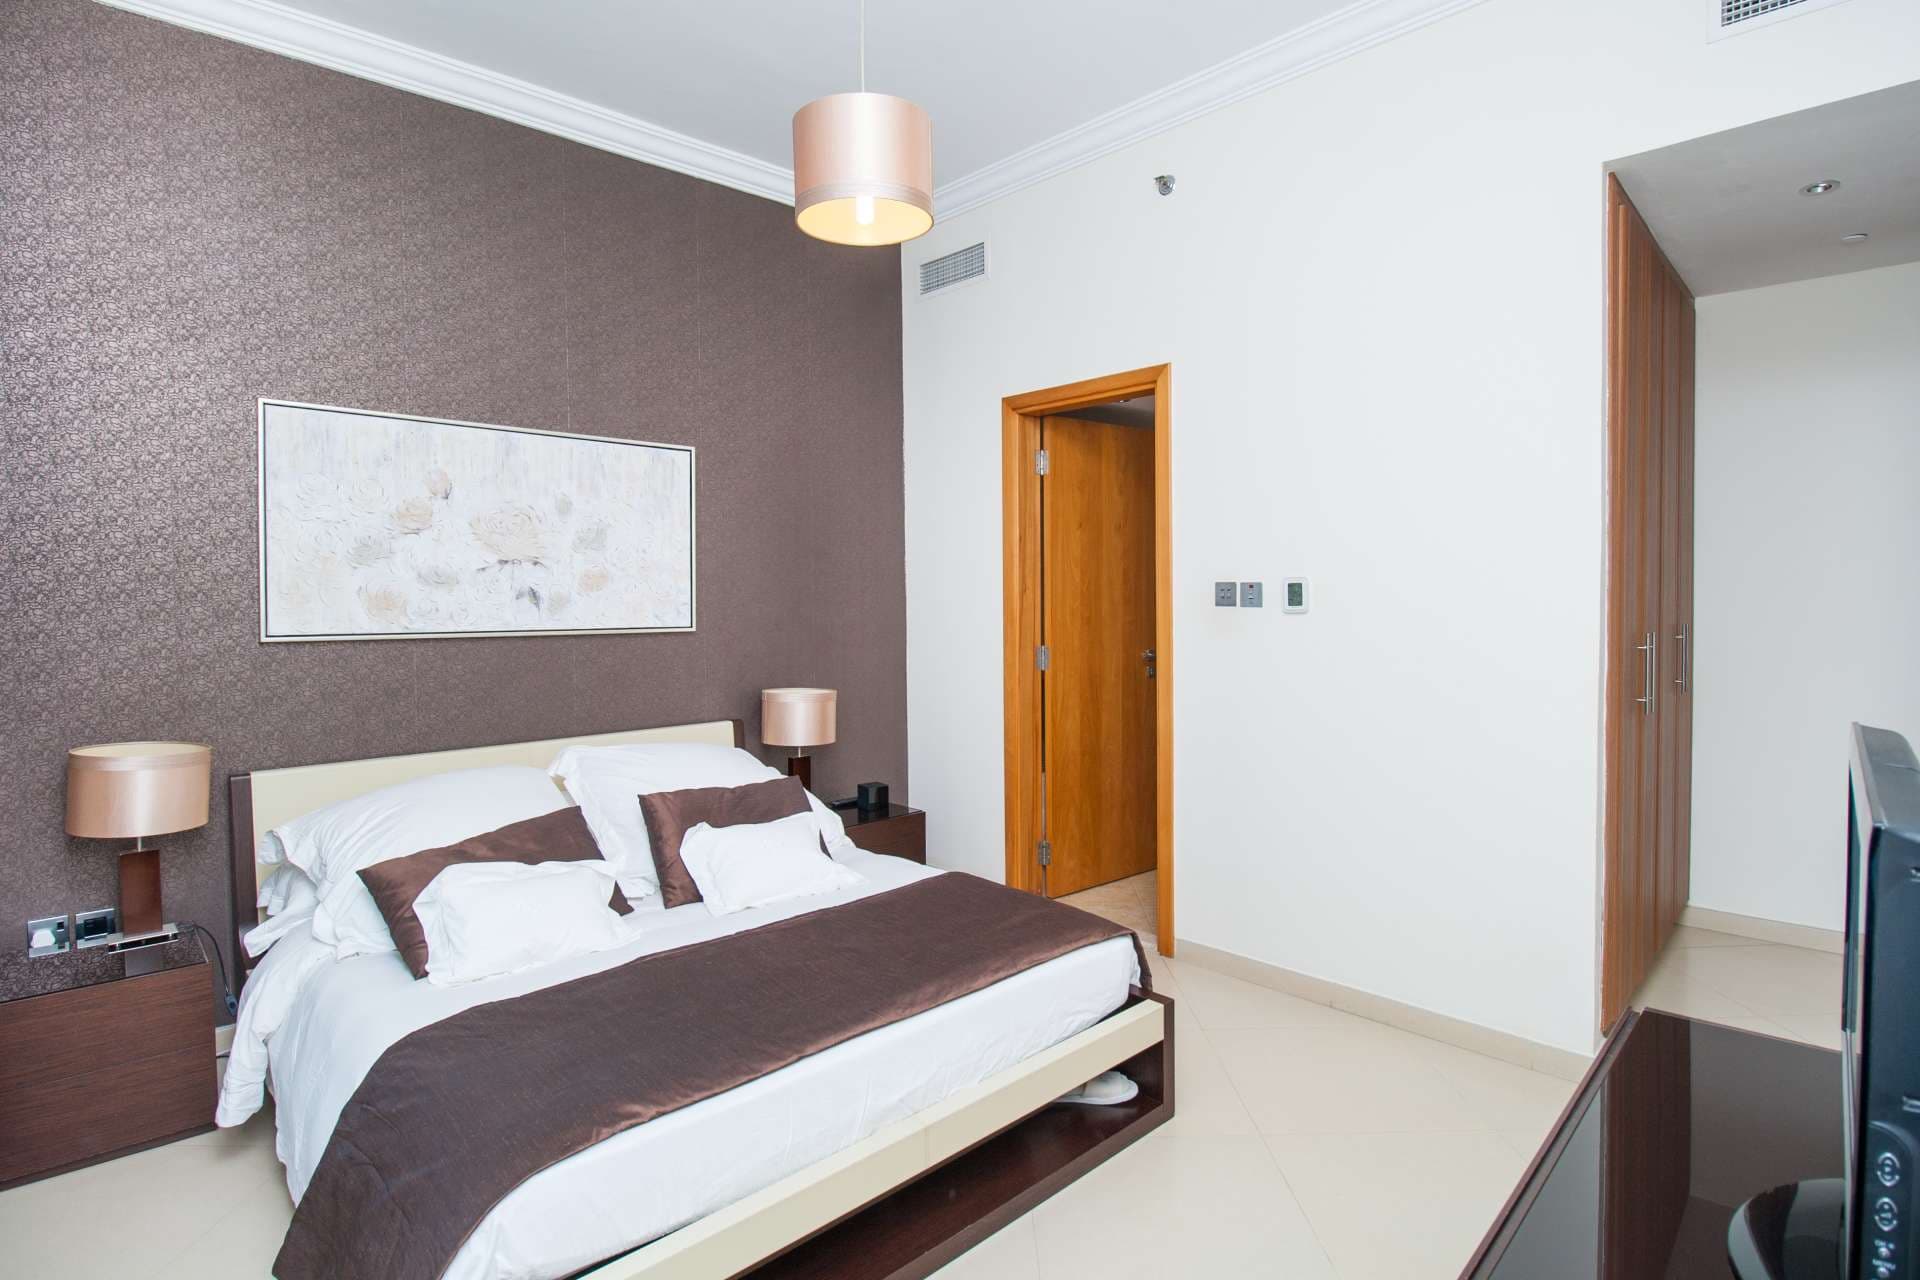 1 Bedroom Apartment For Rent Dorra Bay Lp04864 3a46d90cca19b60.jpg